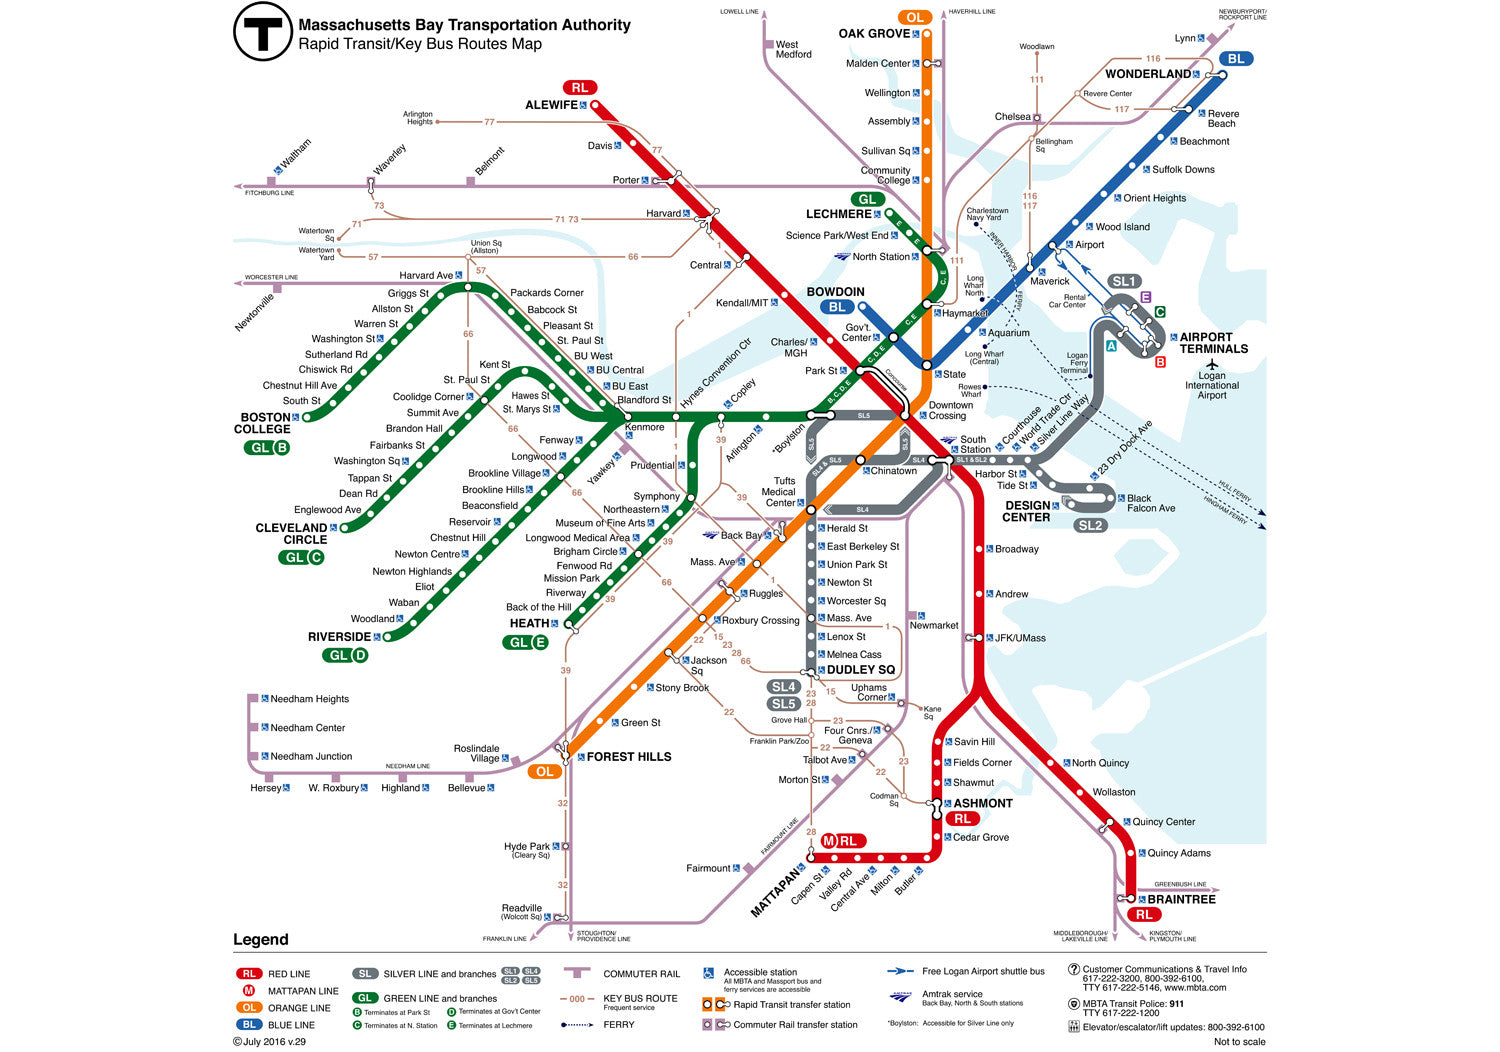 2016 MBTA Rapid Transit w/Key Bus Routes Map